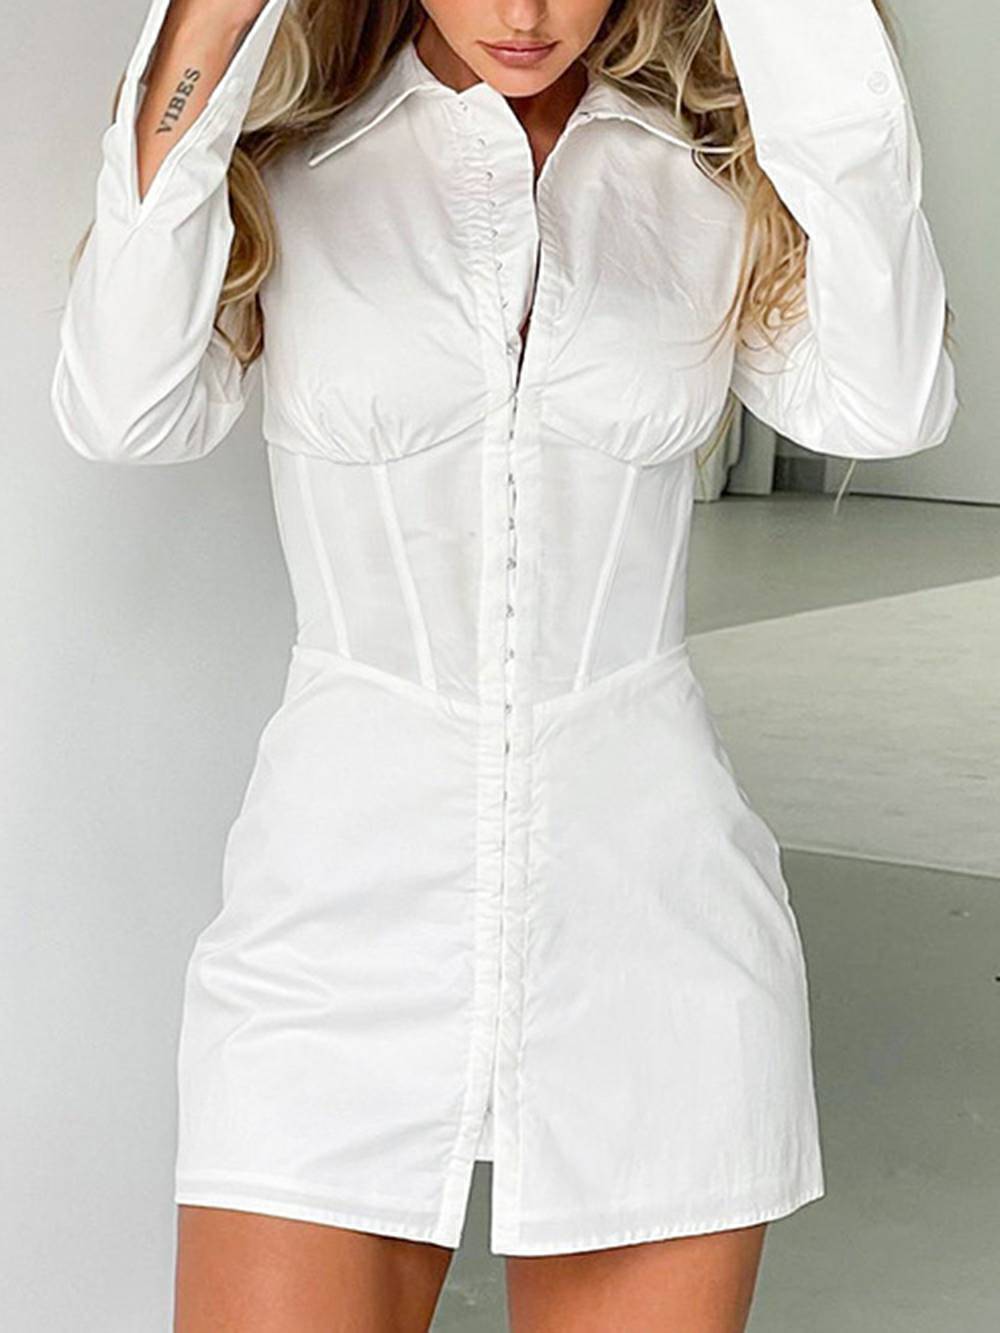 턴다운 칼라 긴 소매 슬림 허리 셔츠 드레스